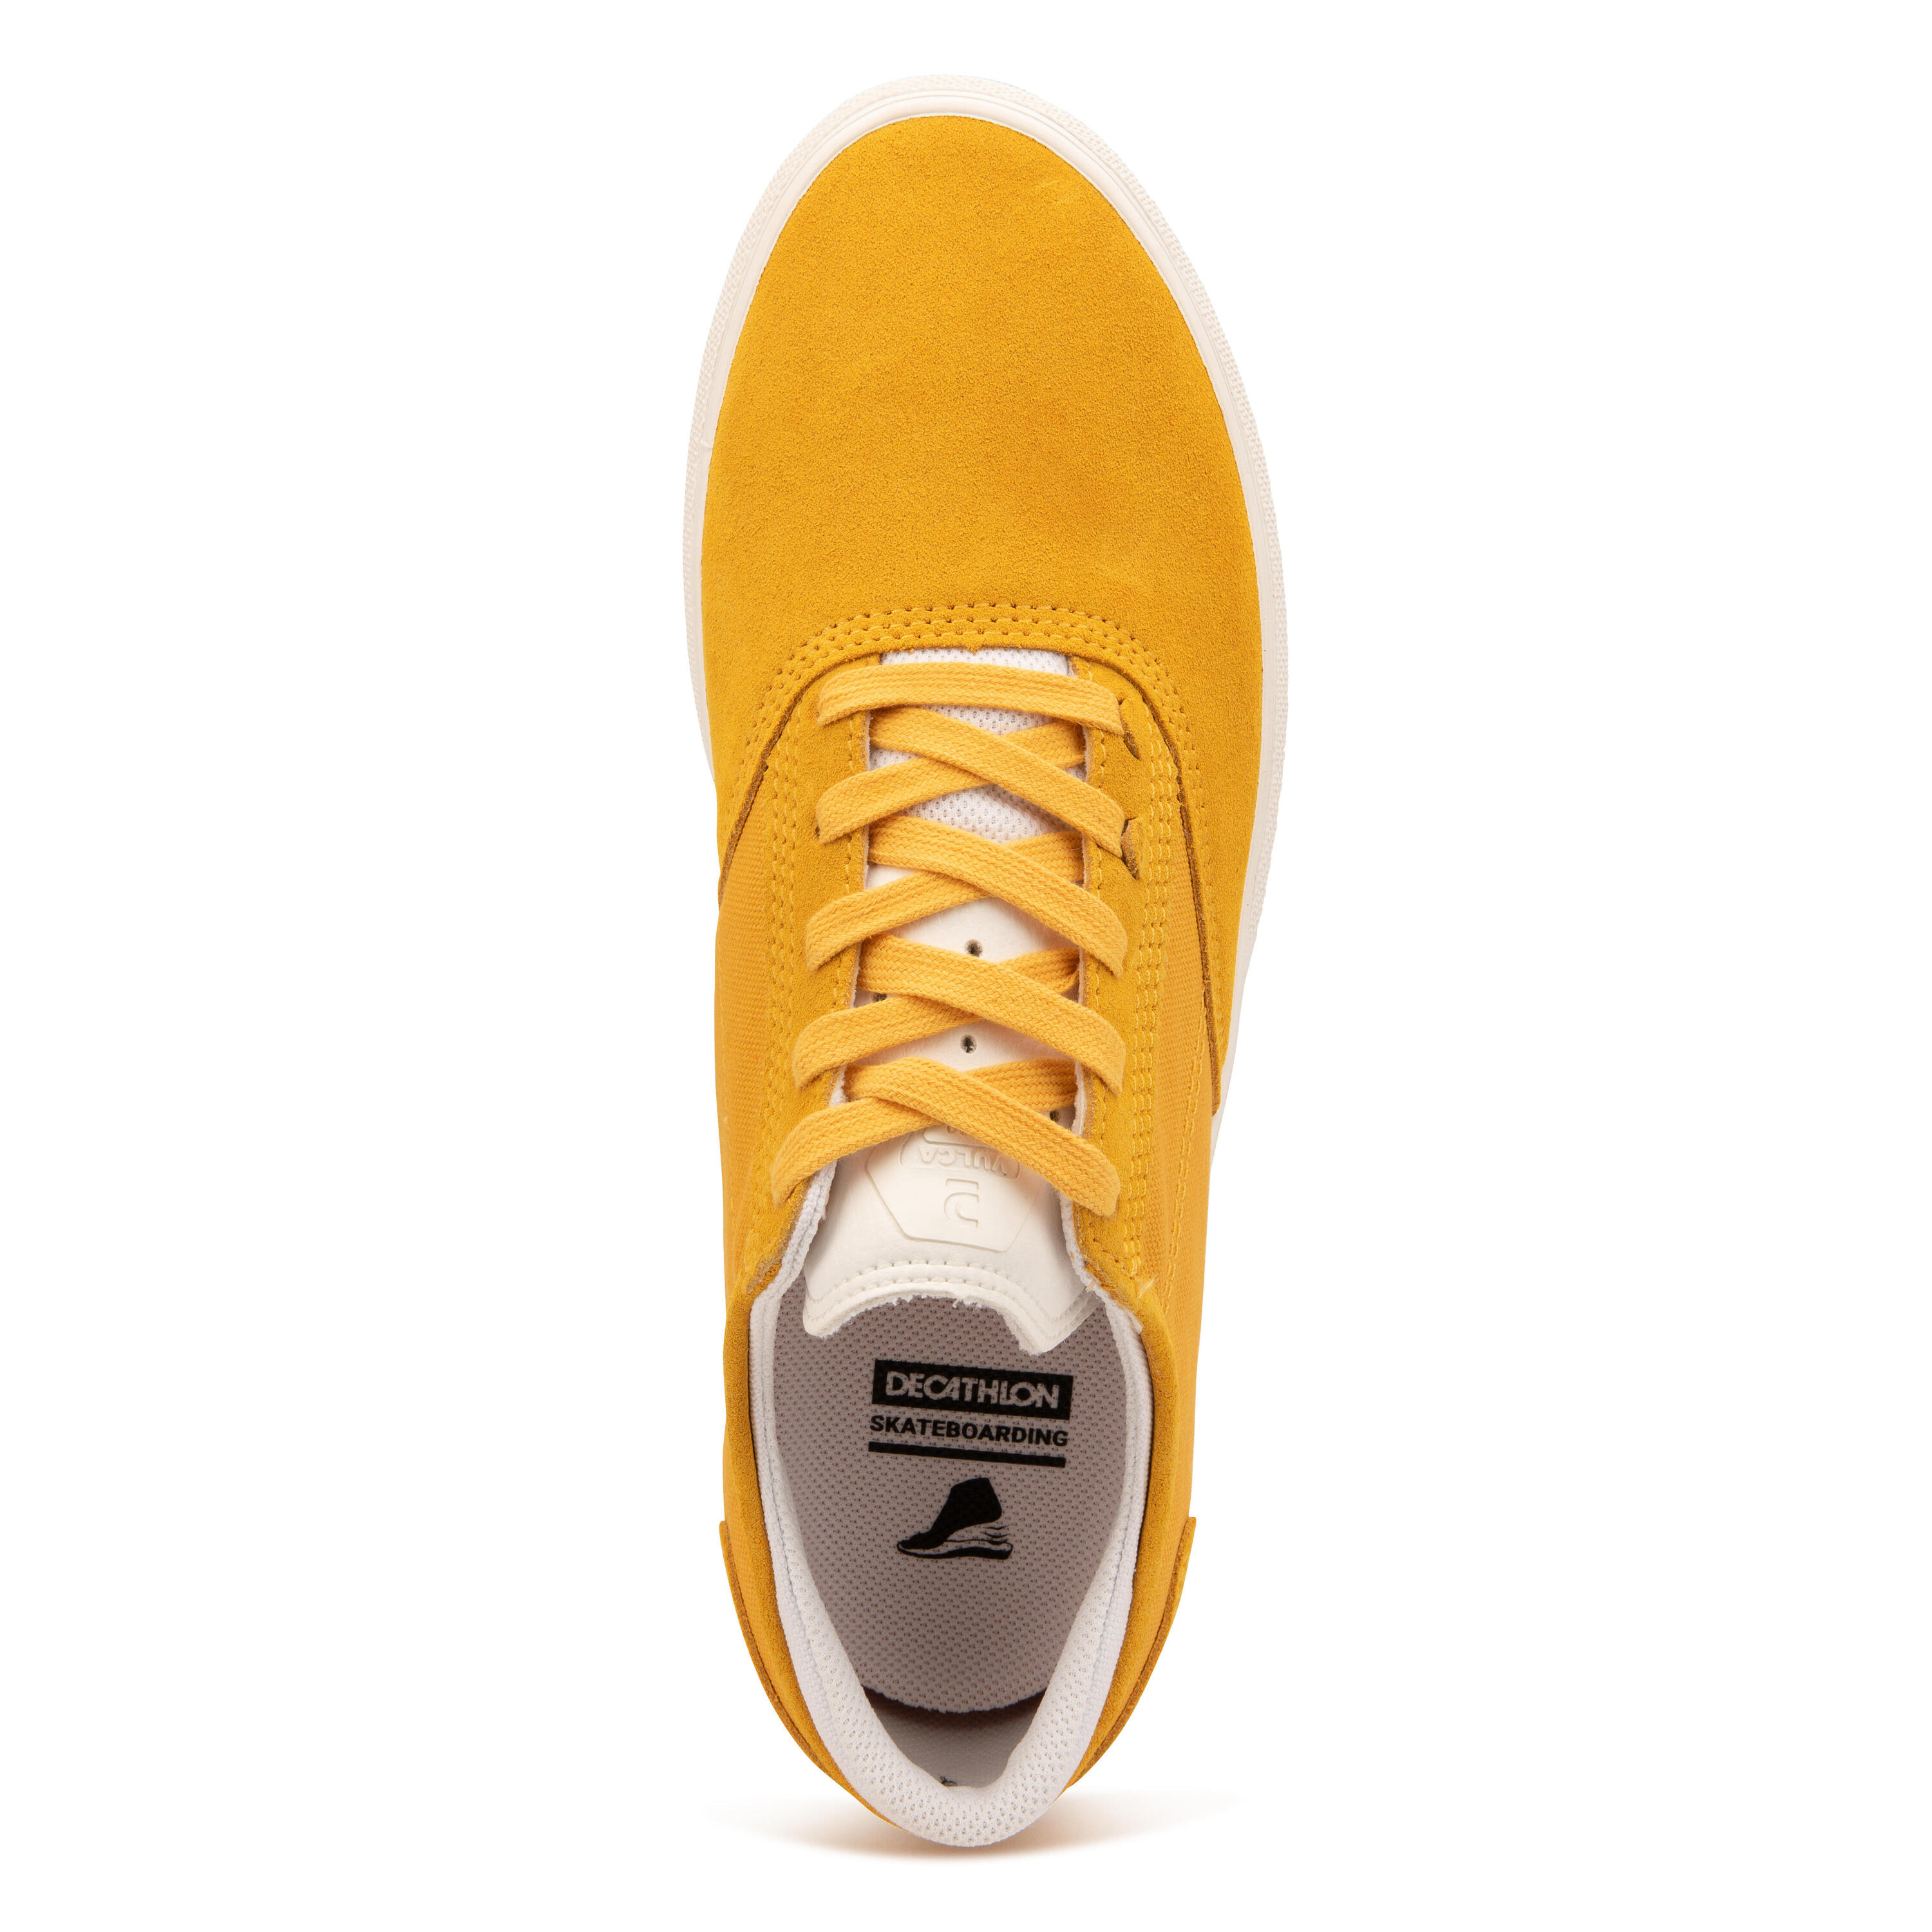 Adult Vulcanised Skate Shoes Vulca 500 II - Yellow/White 6/14